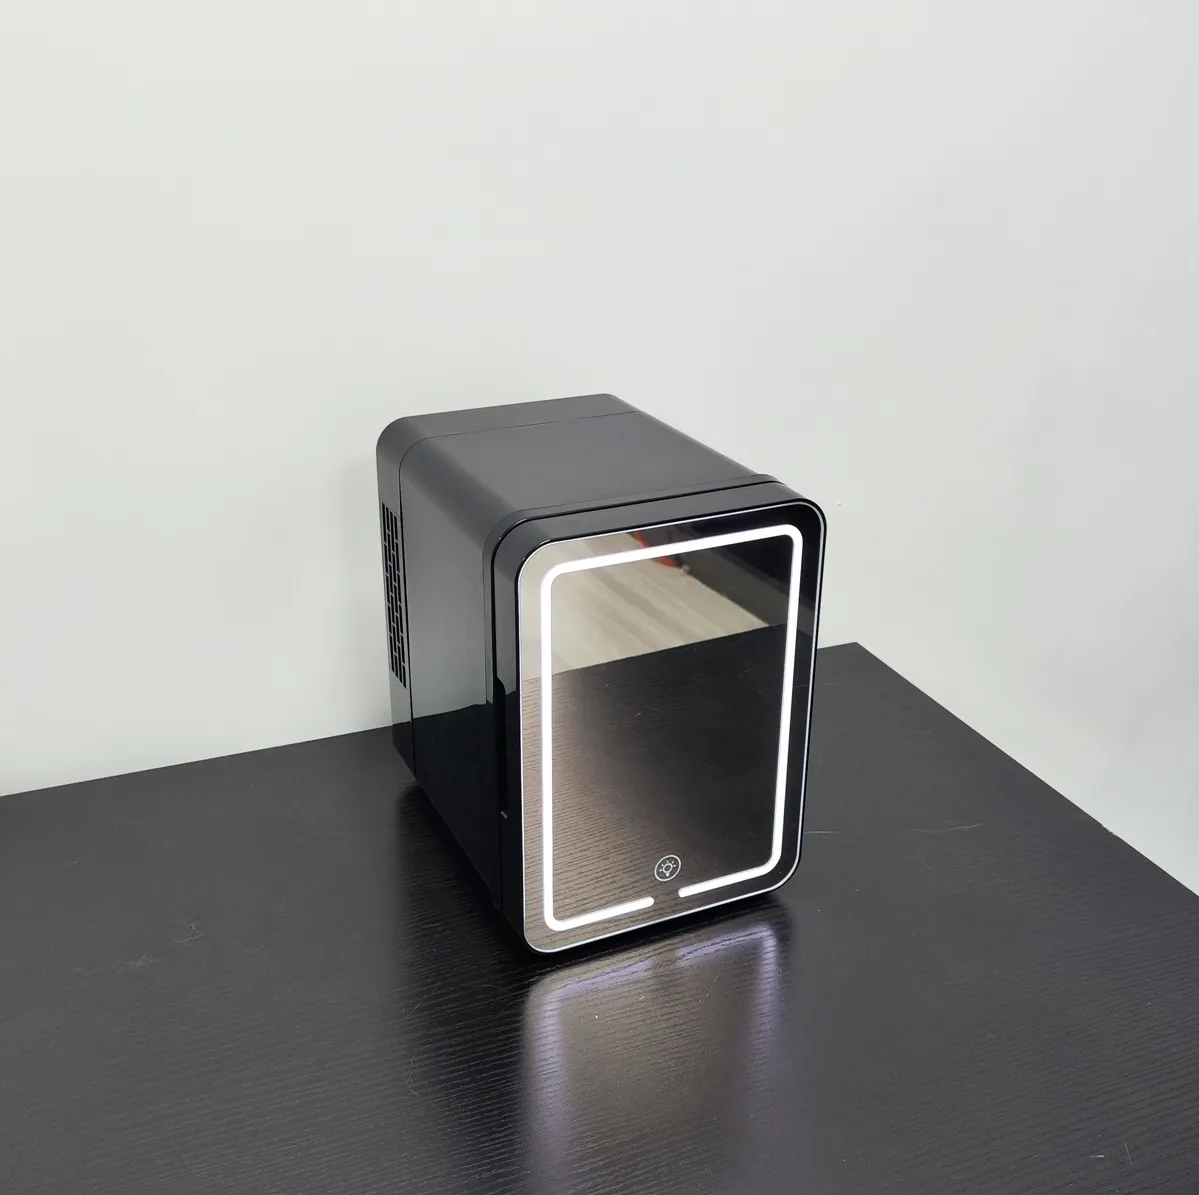 Schwarz New Style 4L Luxus kleinen Kosmetik kühlschrank Digital anzeige Haushalts kühlschrank Schönheit Make-up Kühlschrank mit Spiegel